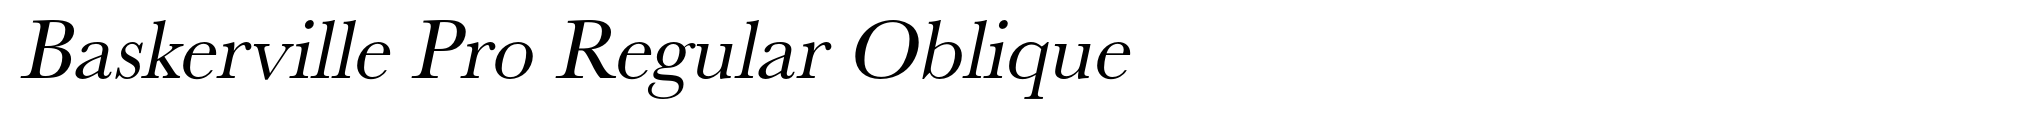 Baskerville Pro Regular Oblique image